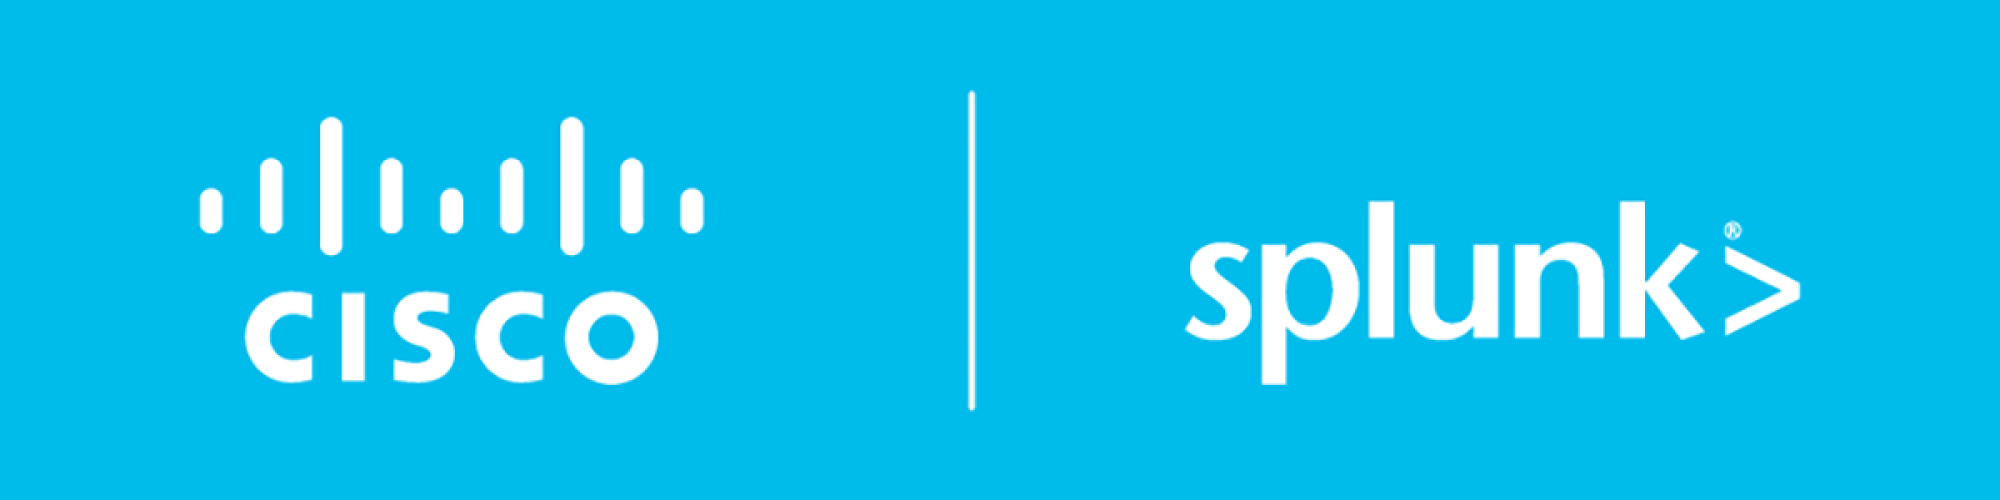 سیسکو Cisco بعد از خرید شرکت Splunk سیستم امتیتی جدیدش را عرضه کرد.